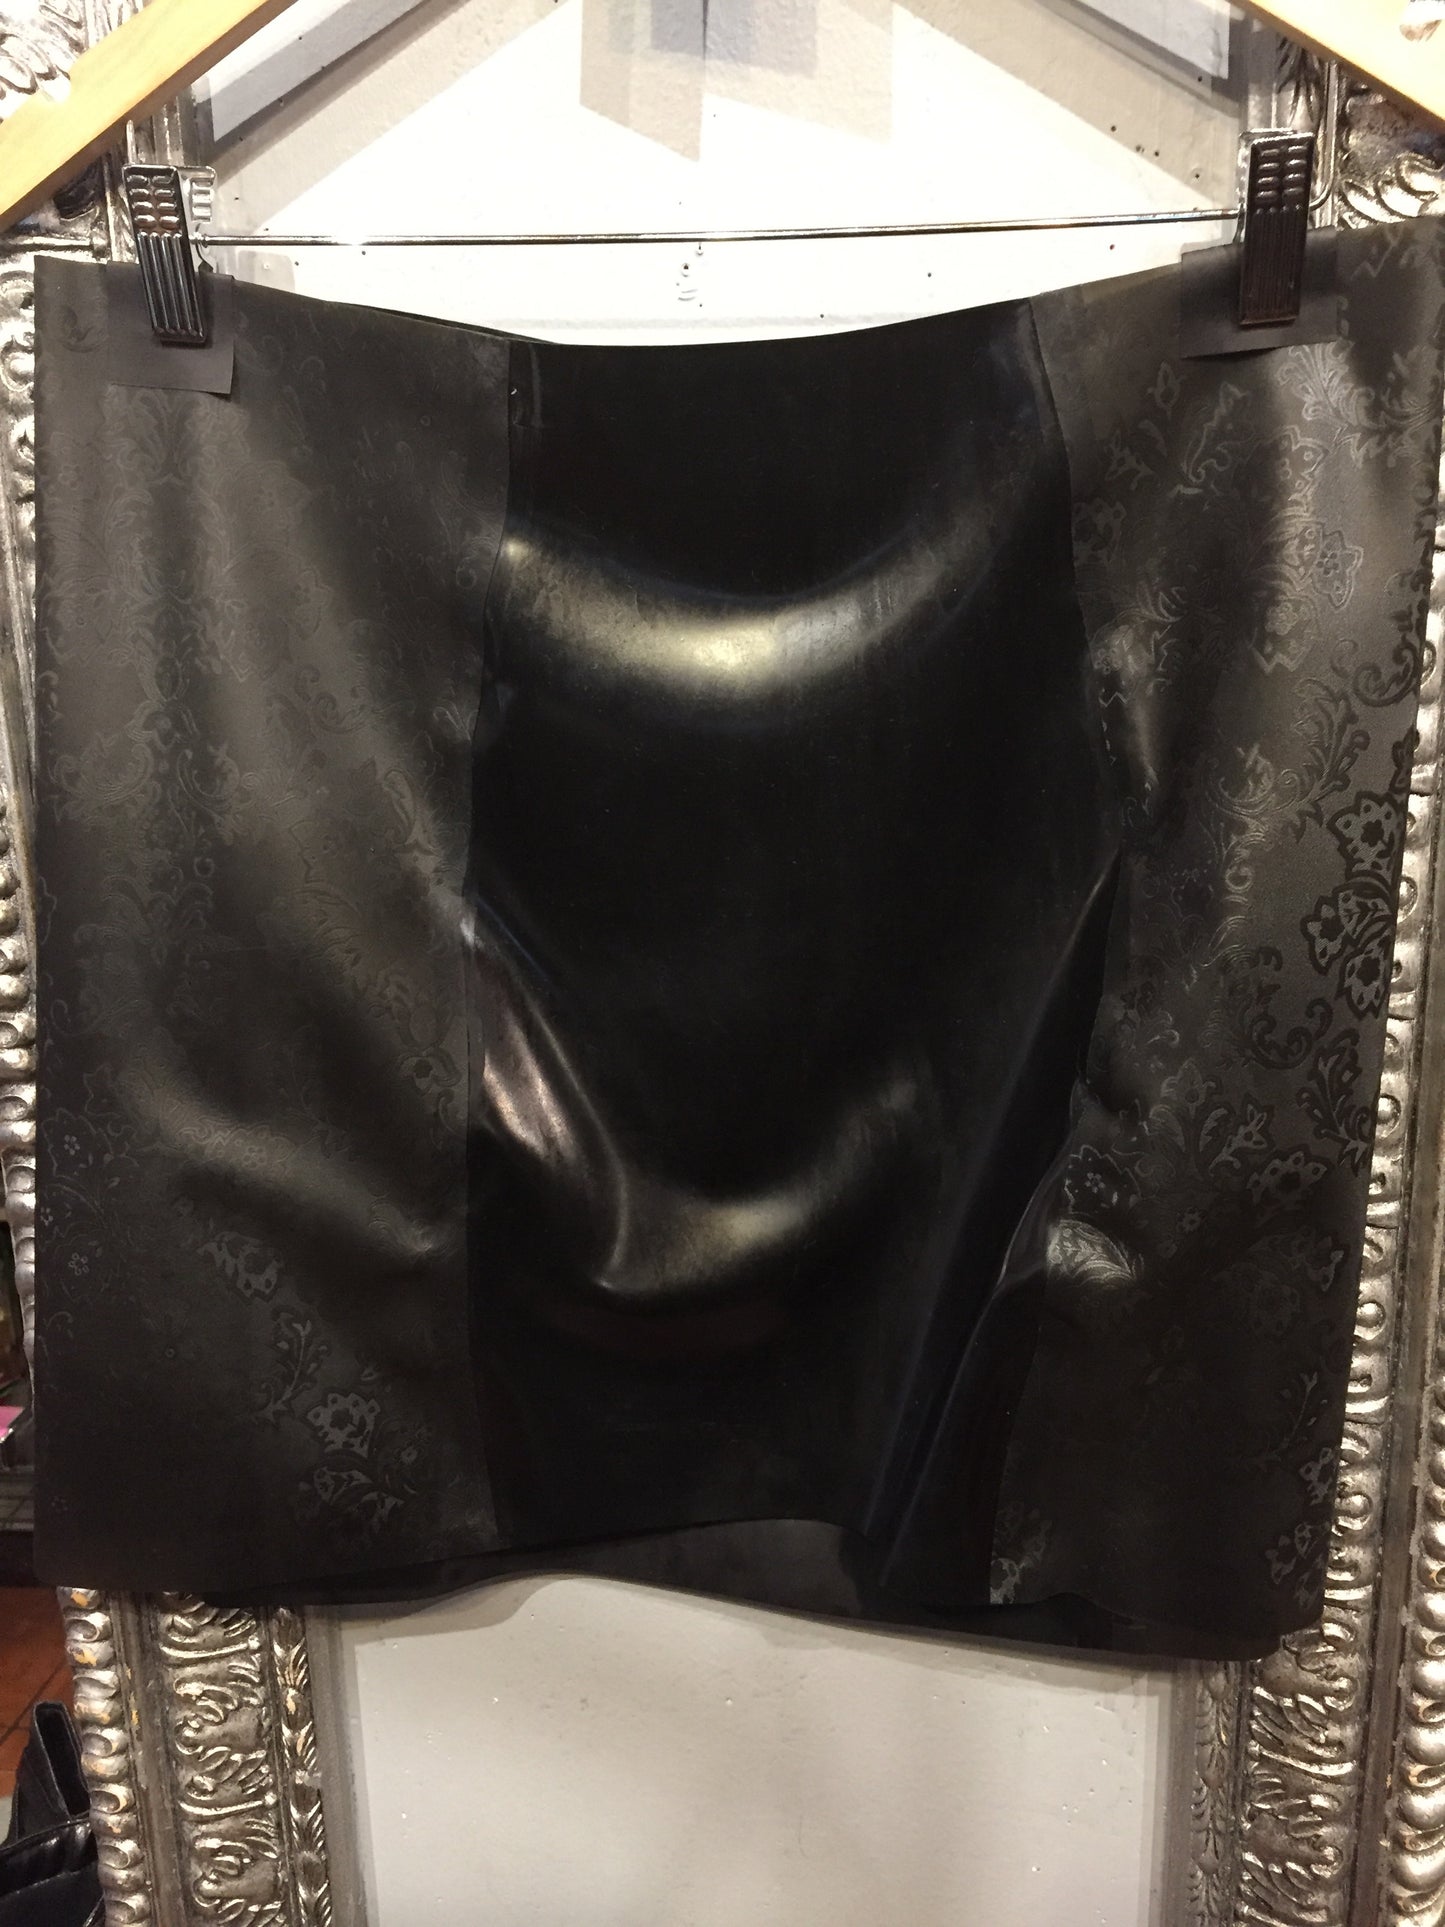 The back of the full black Latex Girdle Mini Skirt on a hanger.